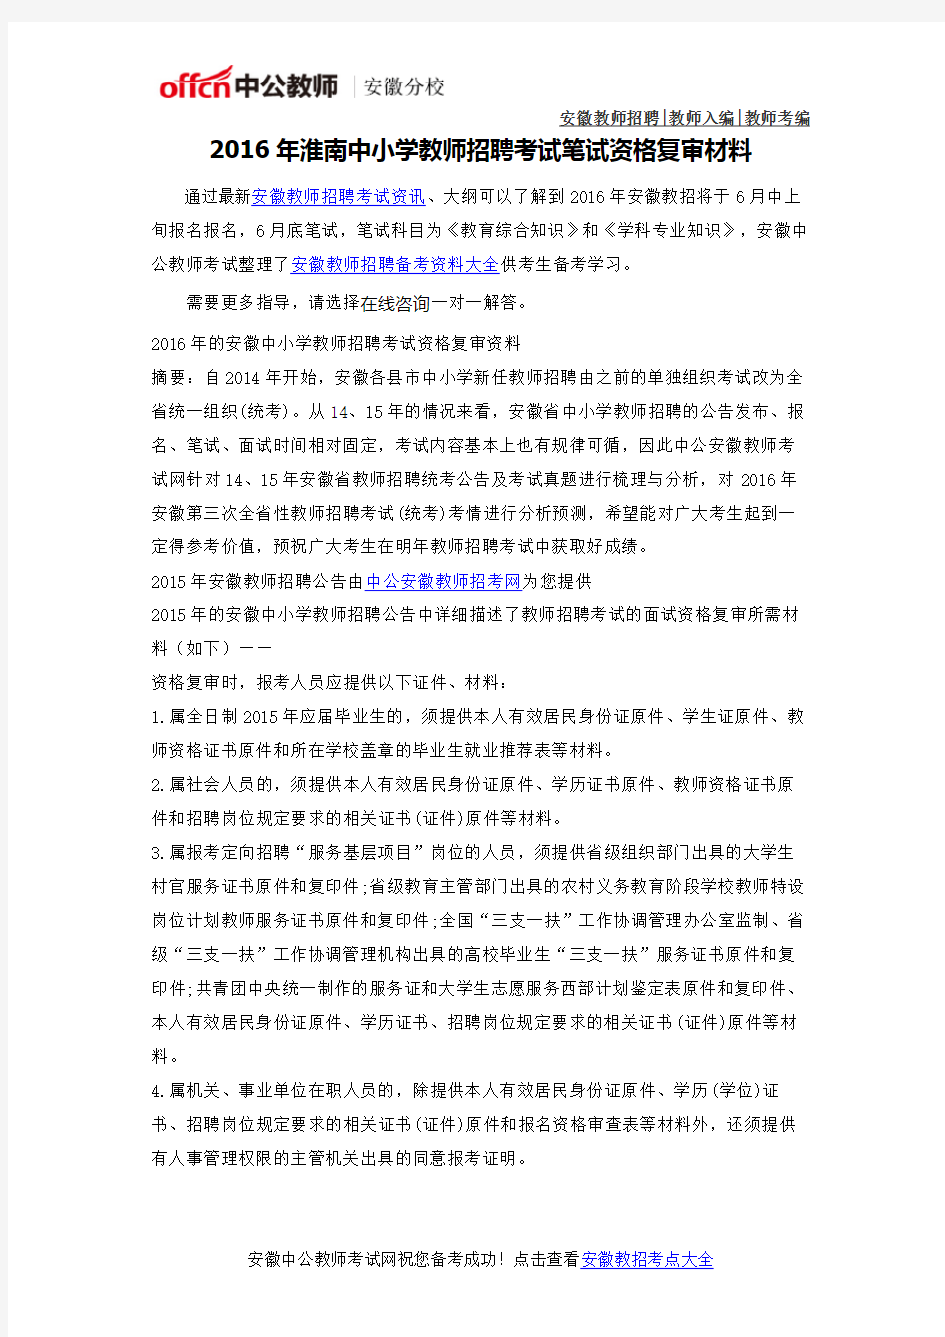 2016年淮南中小学教师考编考试资格复审材料